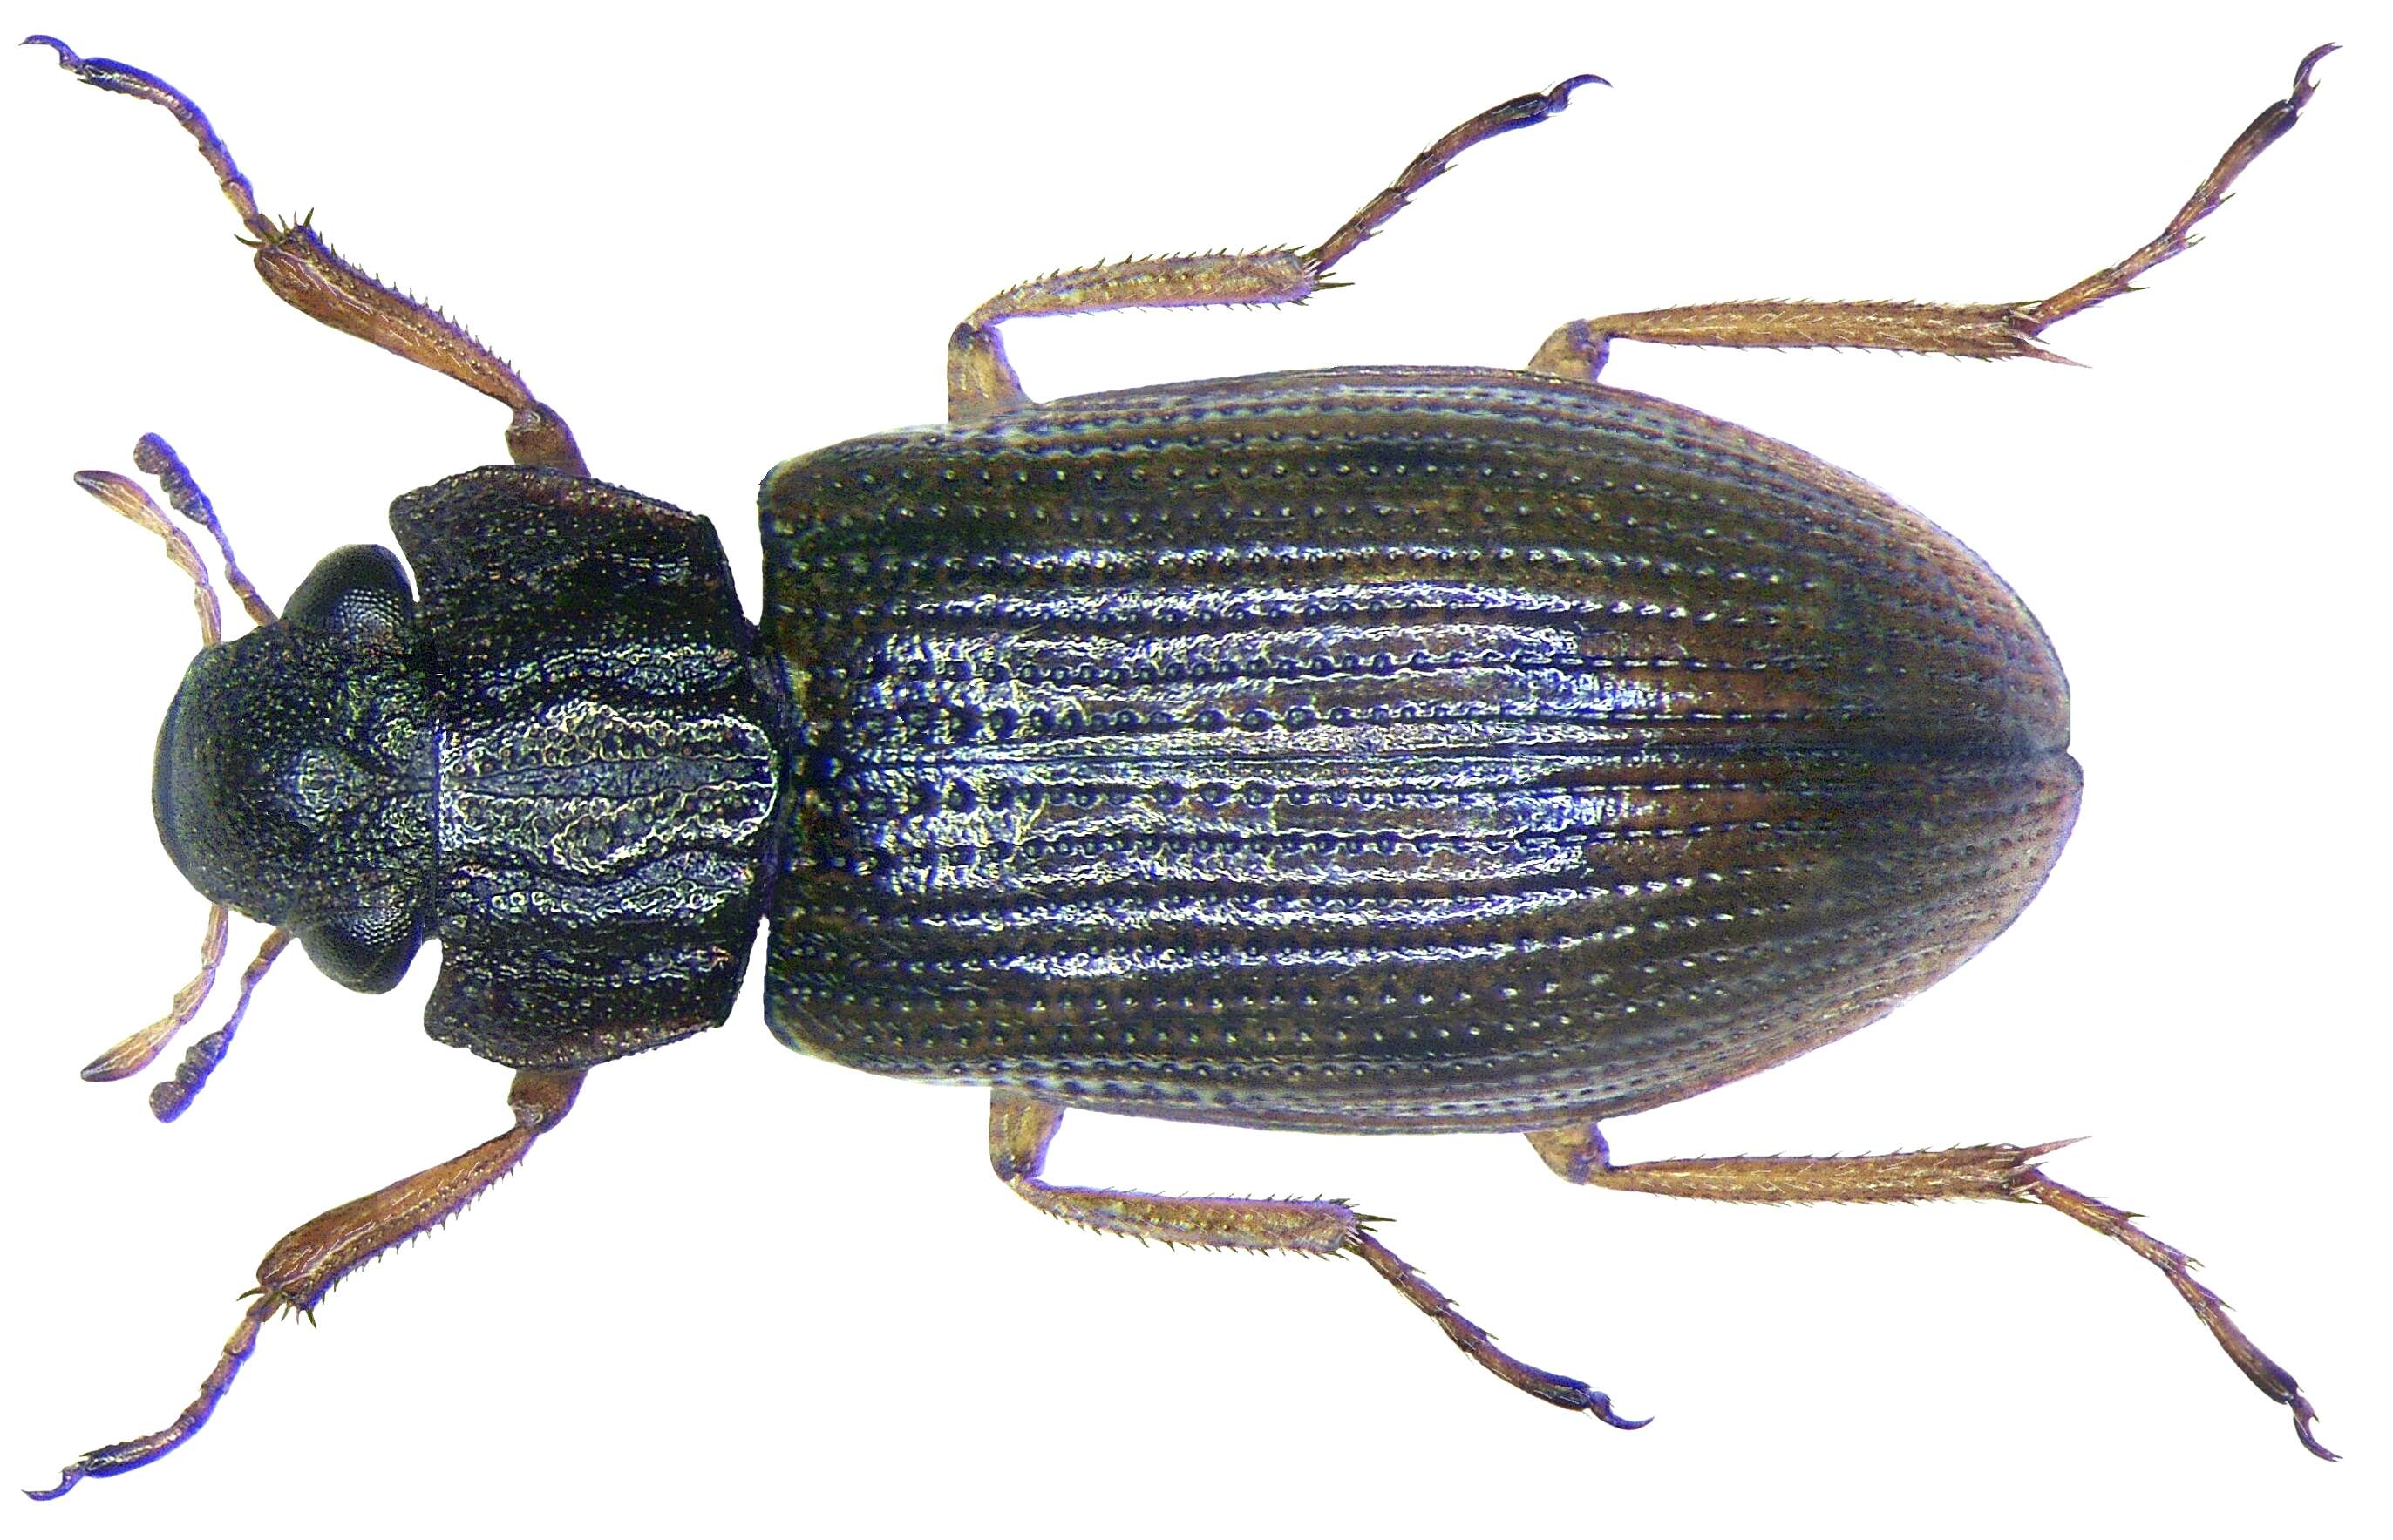 Image of Helophoridae